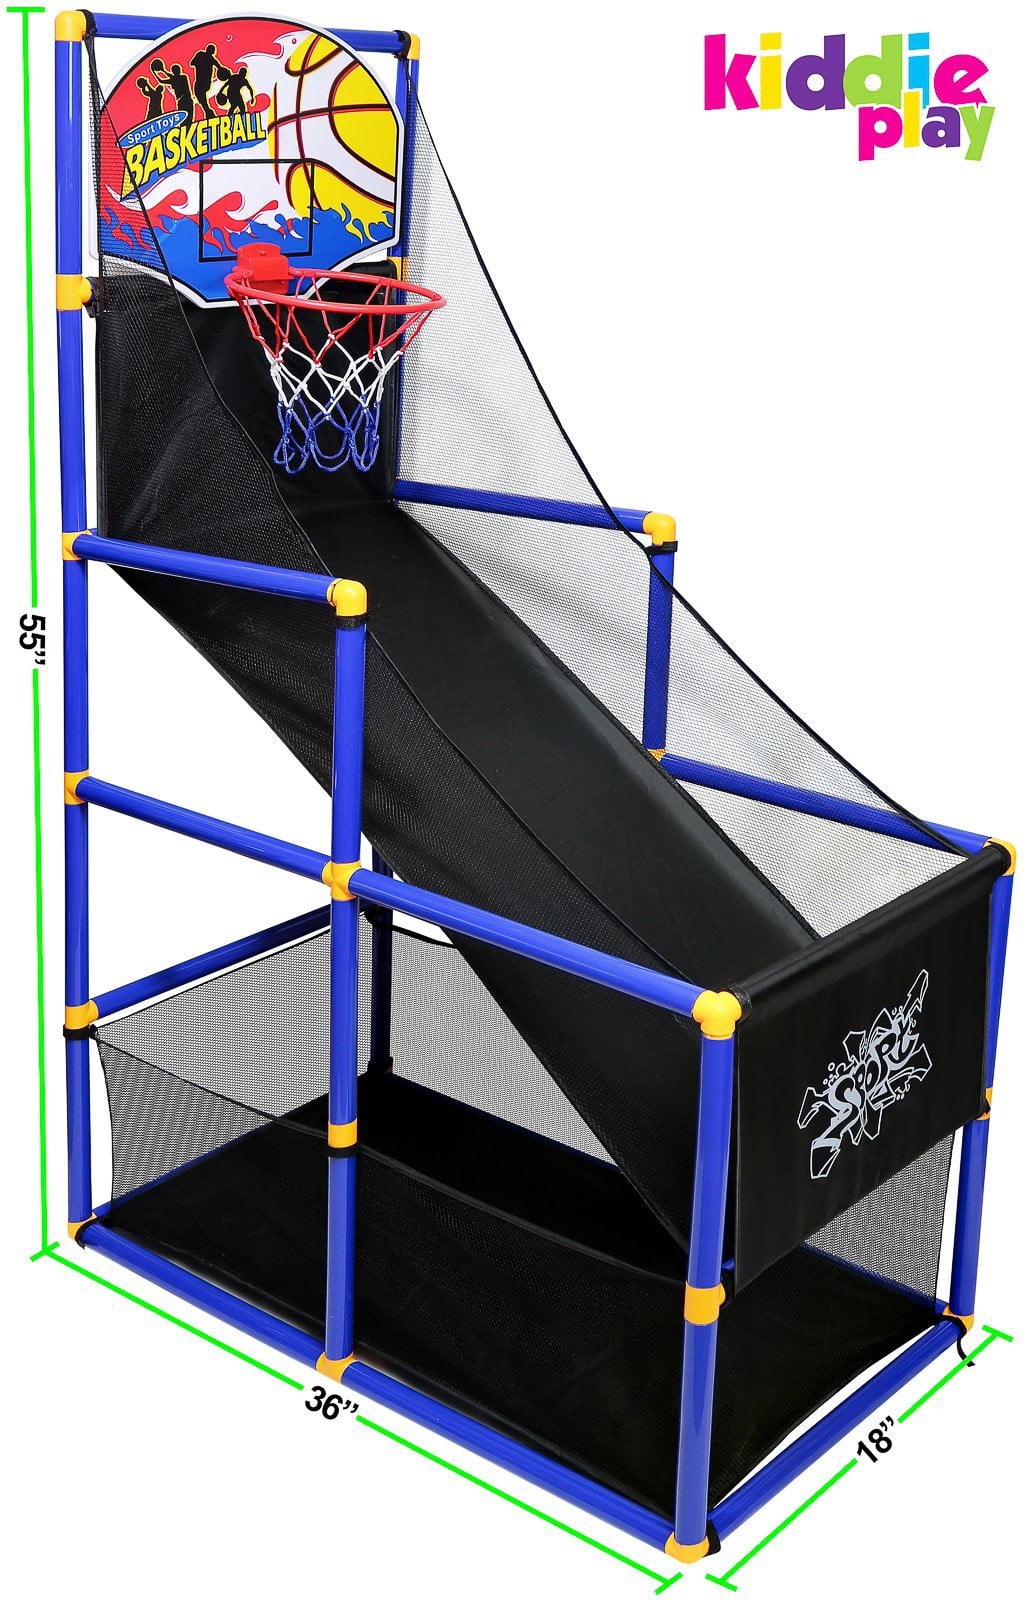 Kiddie Play Kids Basketball Hoop Arcade Game Ship for sale online 